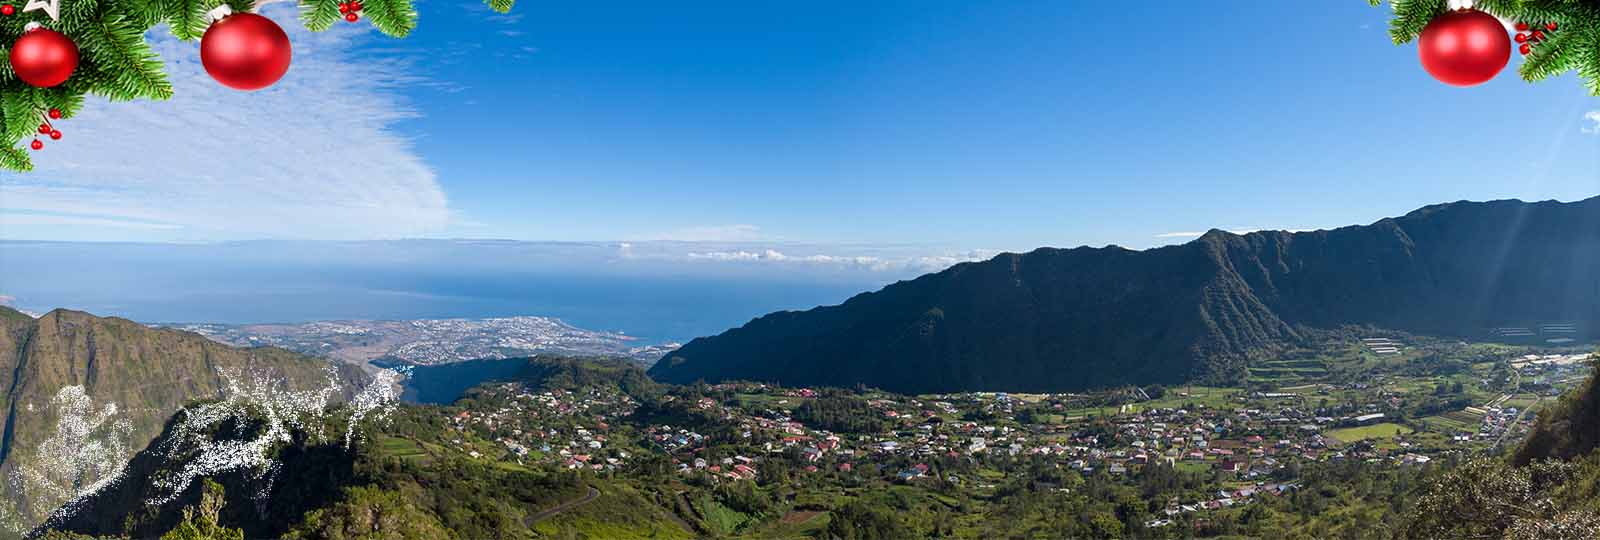 Tourisme et offre promotionnelle à la Réunion